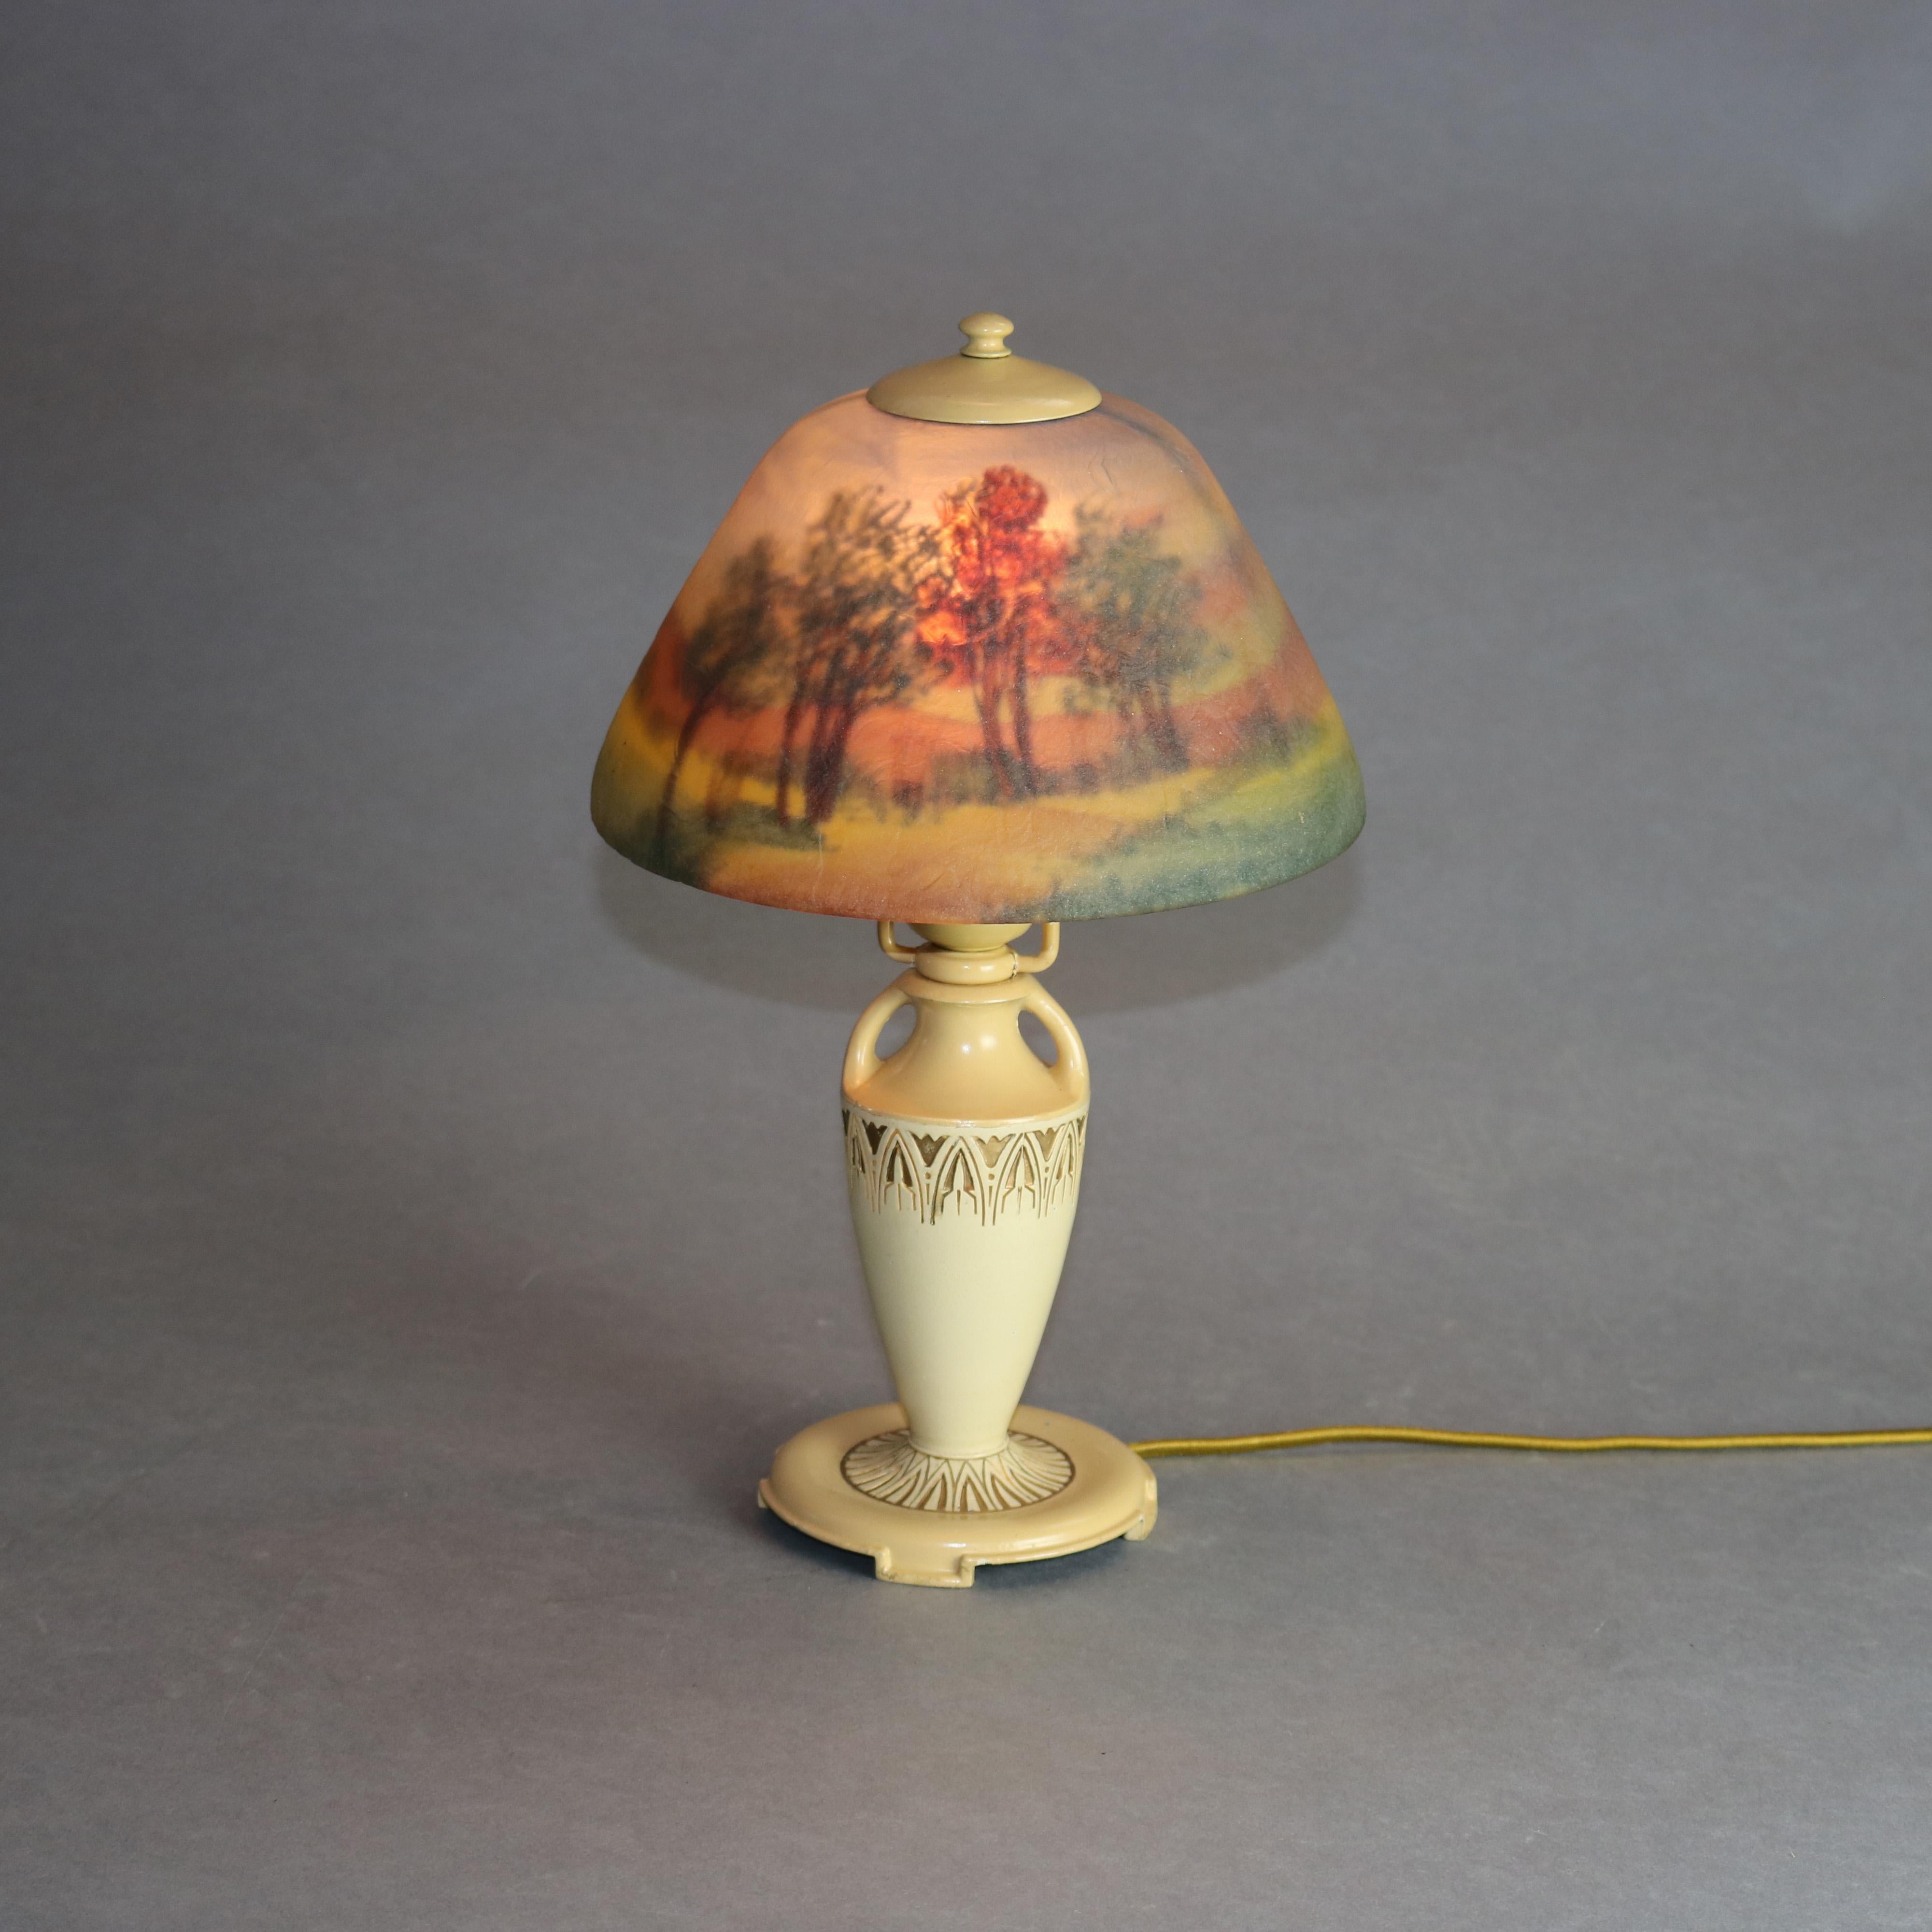 American Antique Moe Bridges Reverse Hand Painted Boudoir Urn Form Table Lamp, c1920